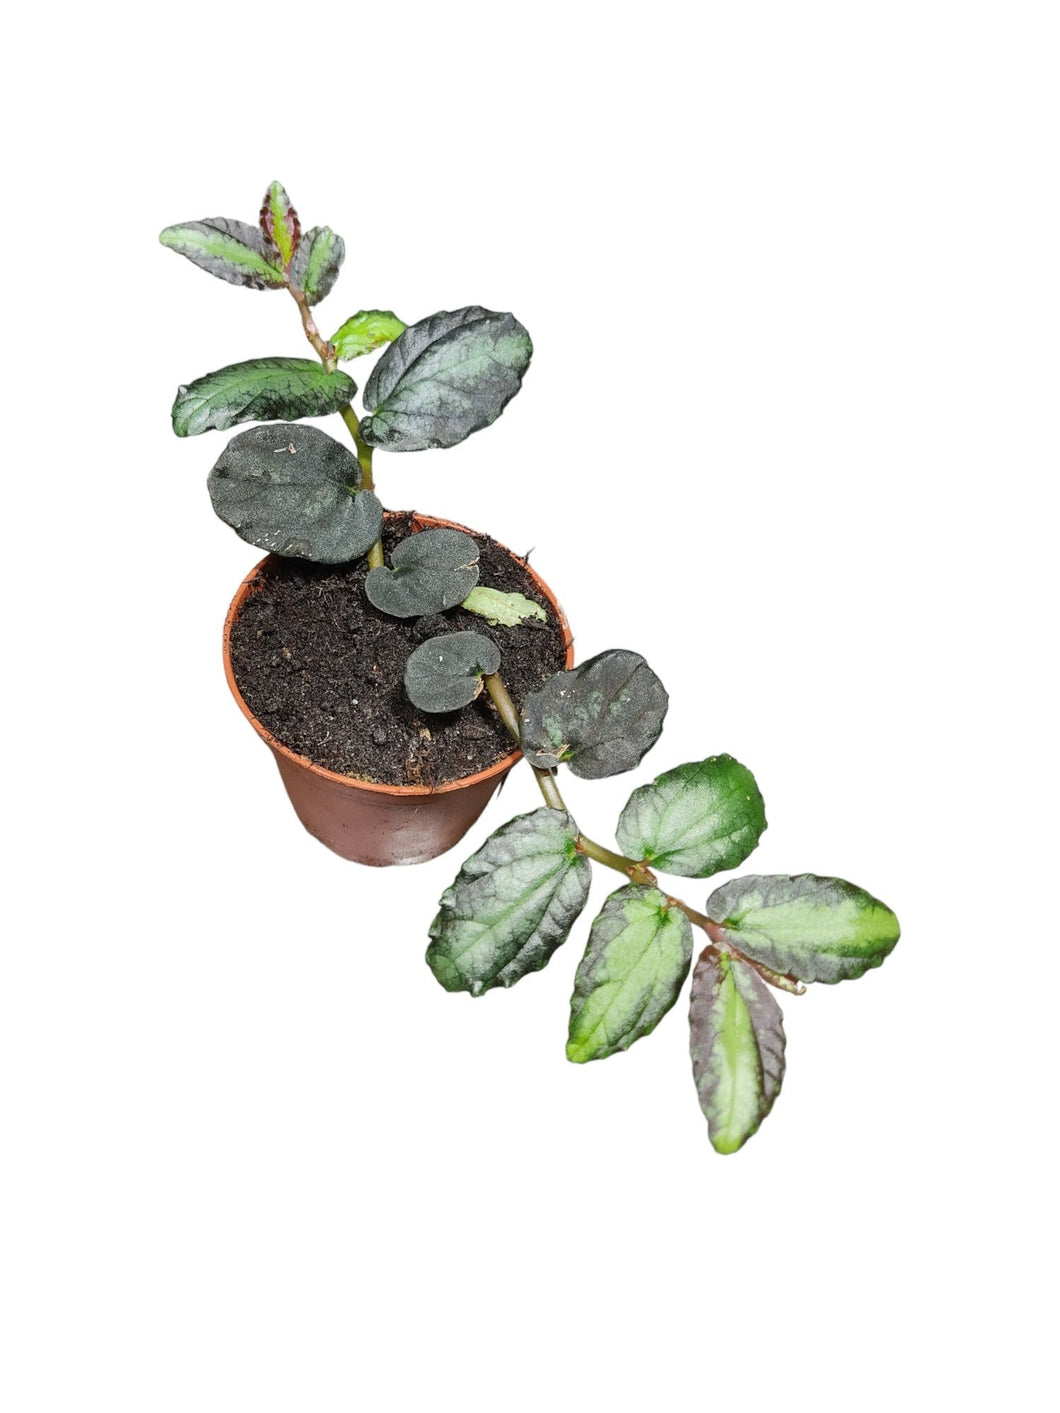 La Pellionia repens è una pianta perenne erbacea appartenente alla famiglia delle Urticaceae. 